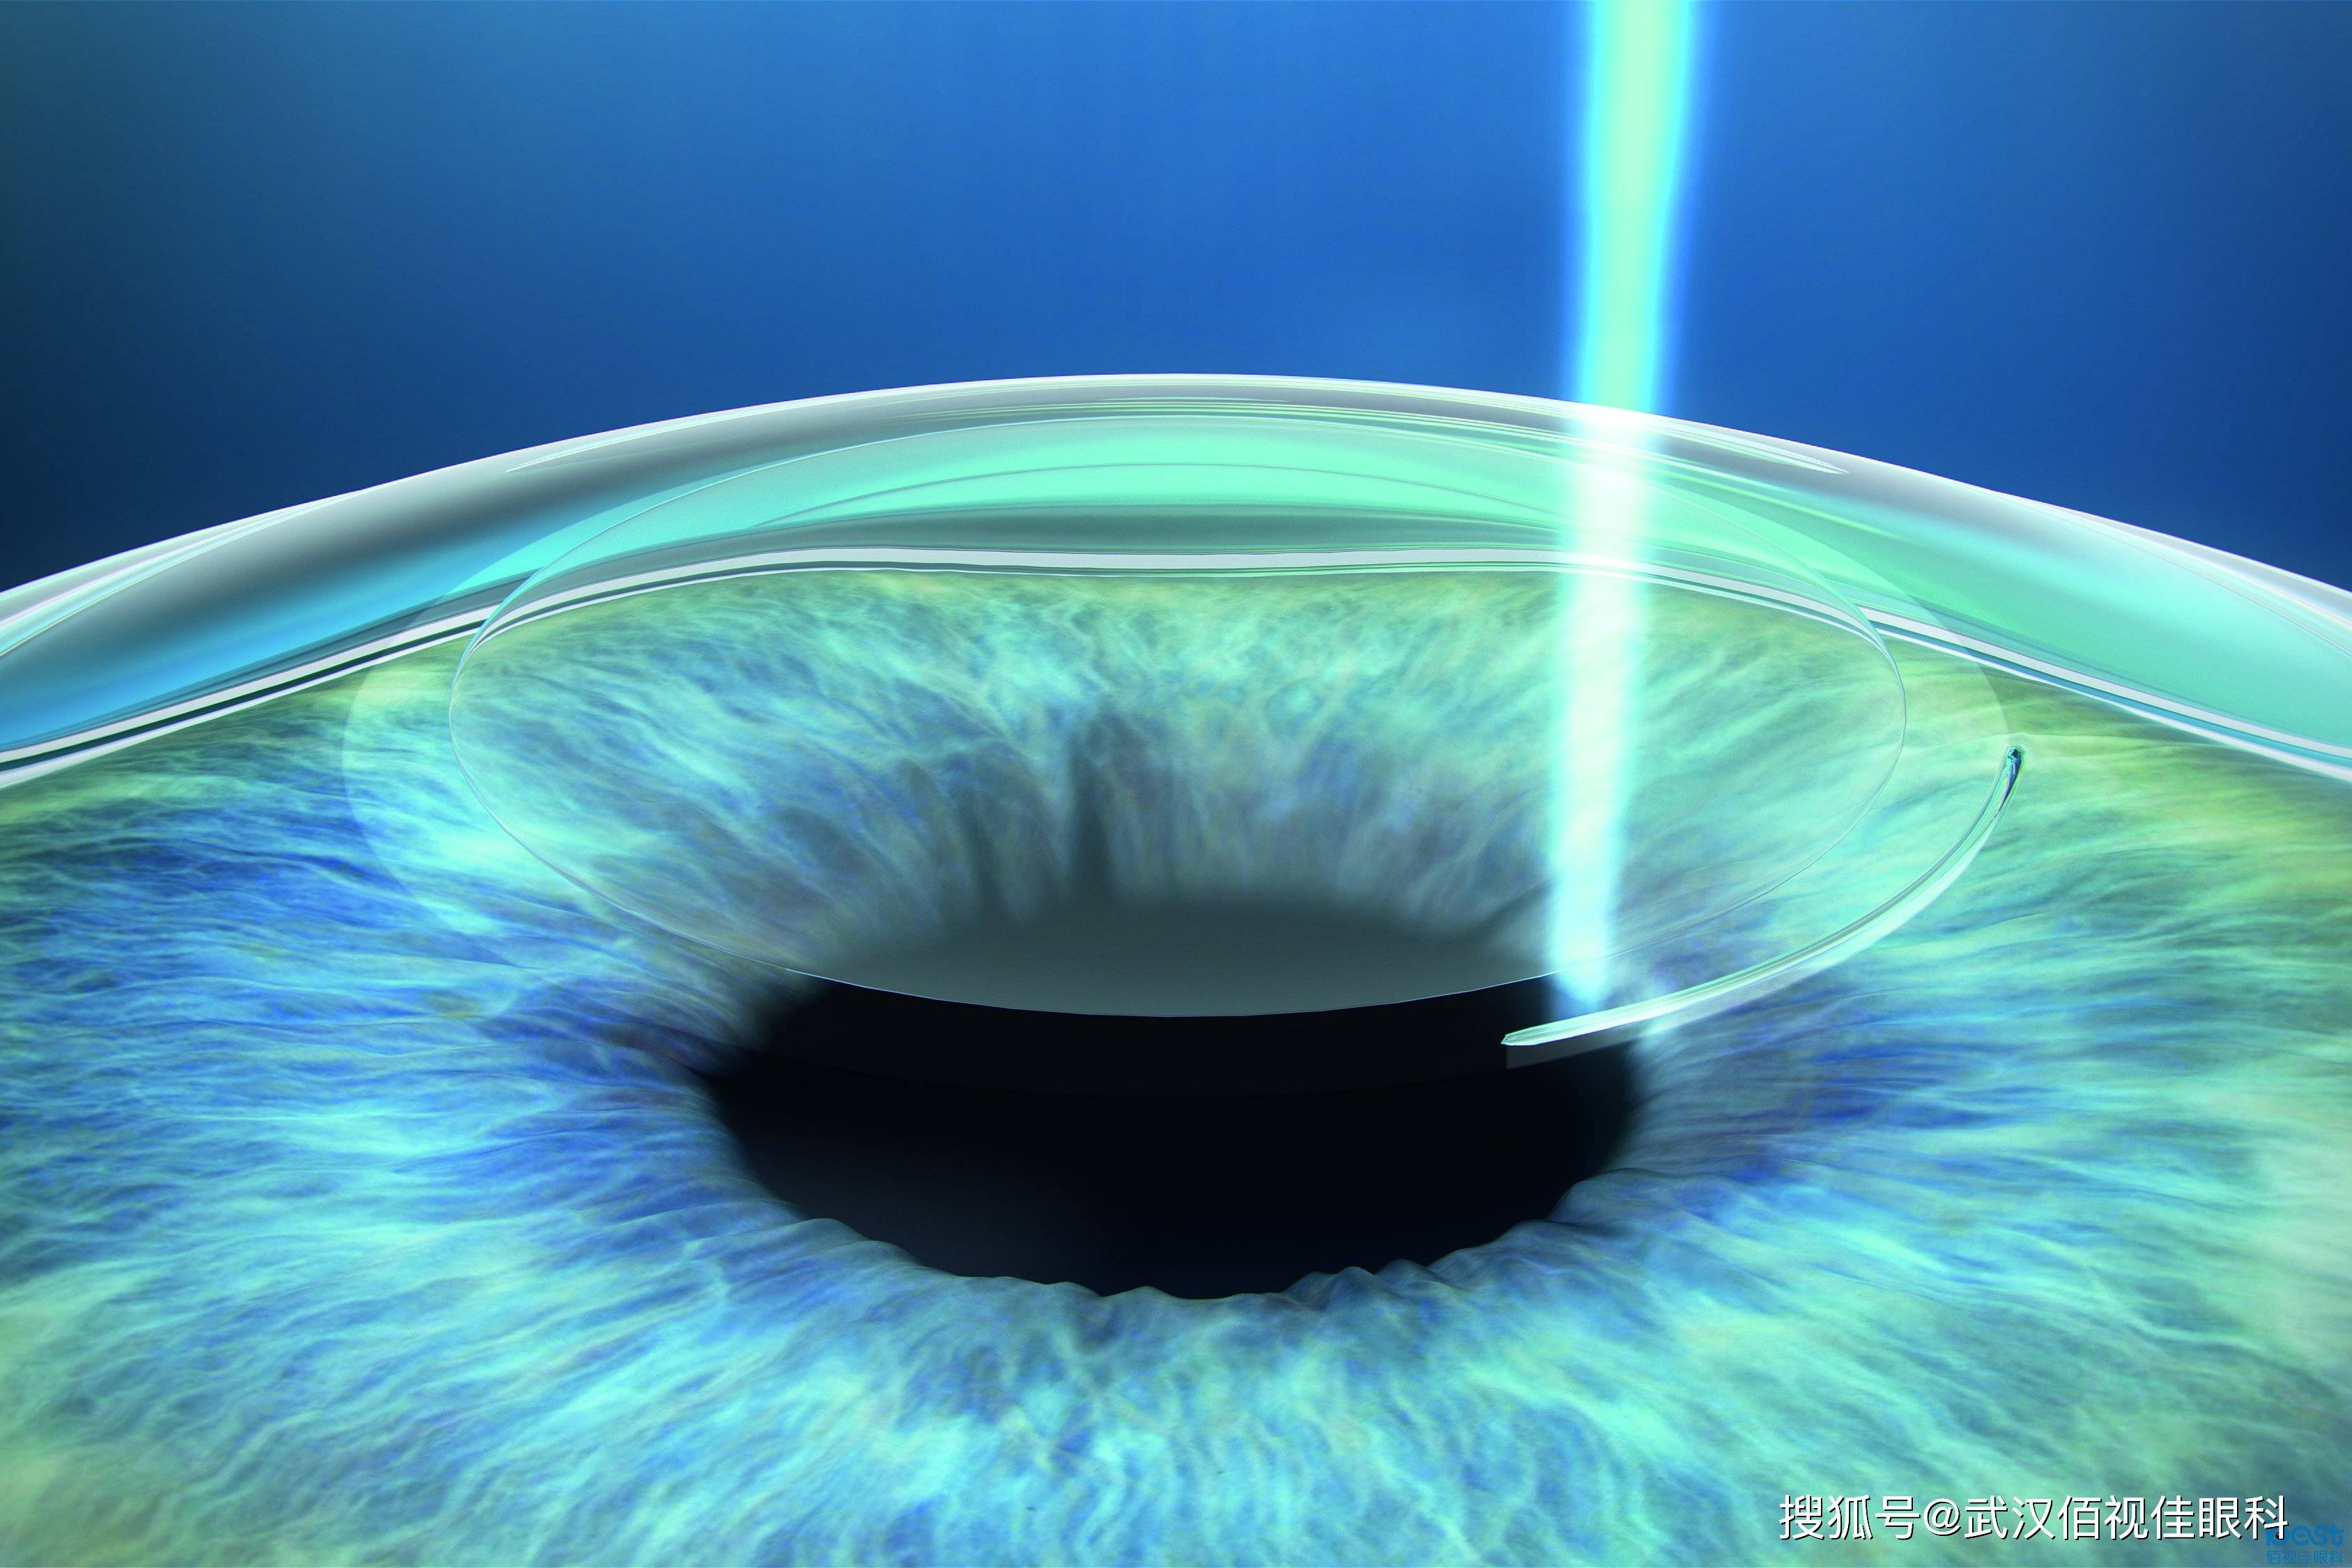 目前主流的近视矫正手术方式:飞秒激光和晶体植入,你都了解吗?